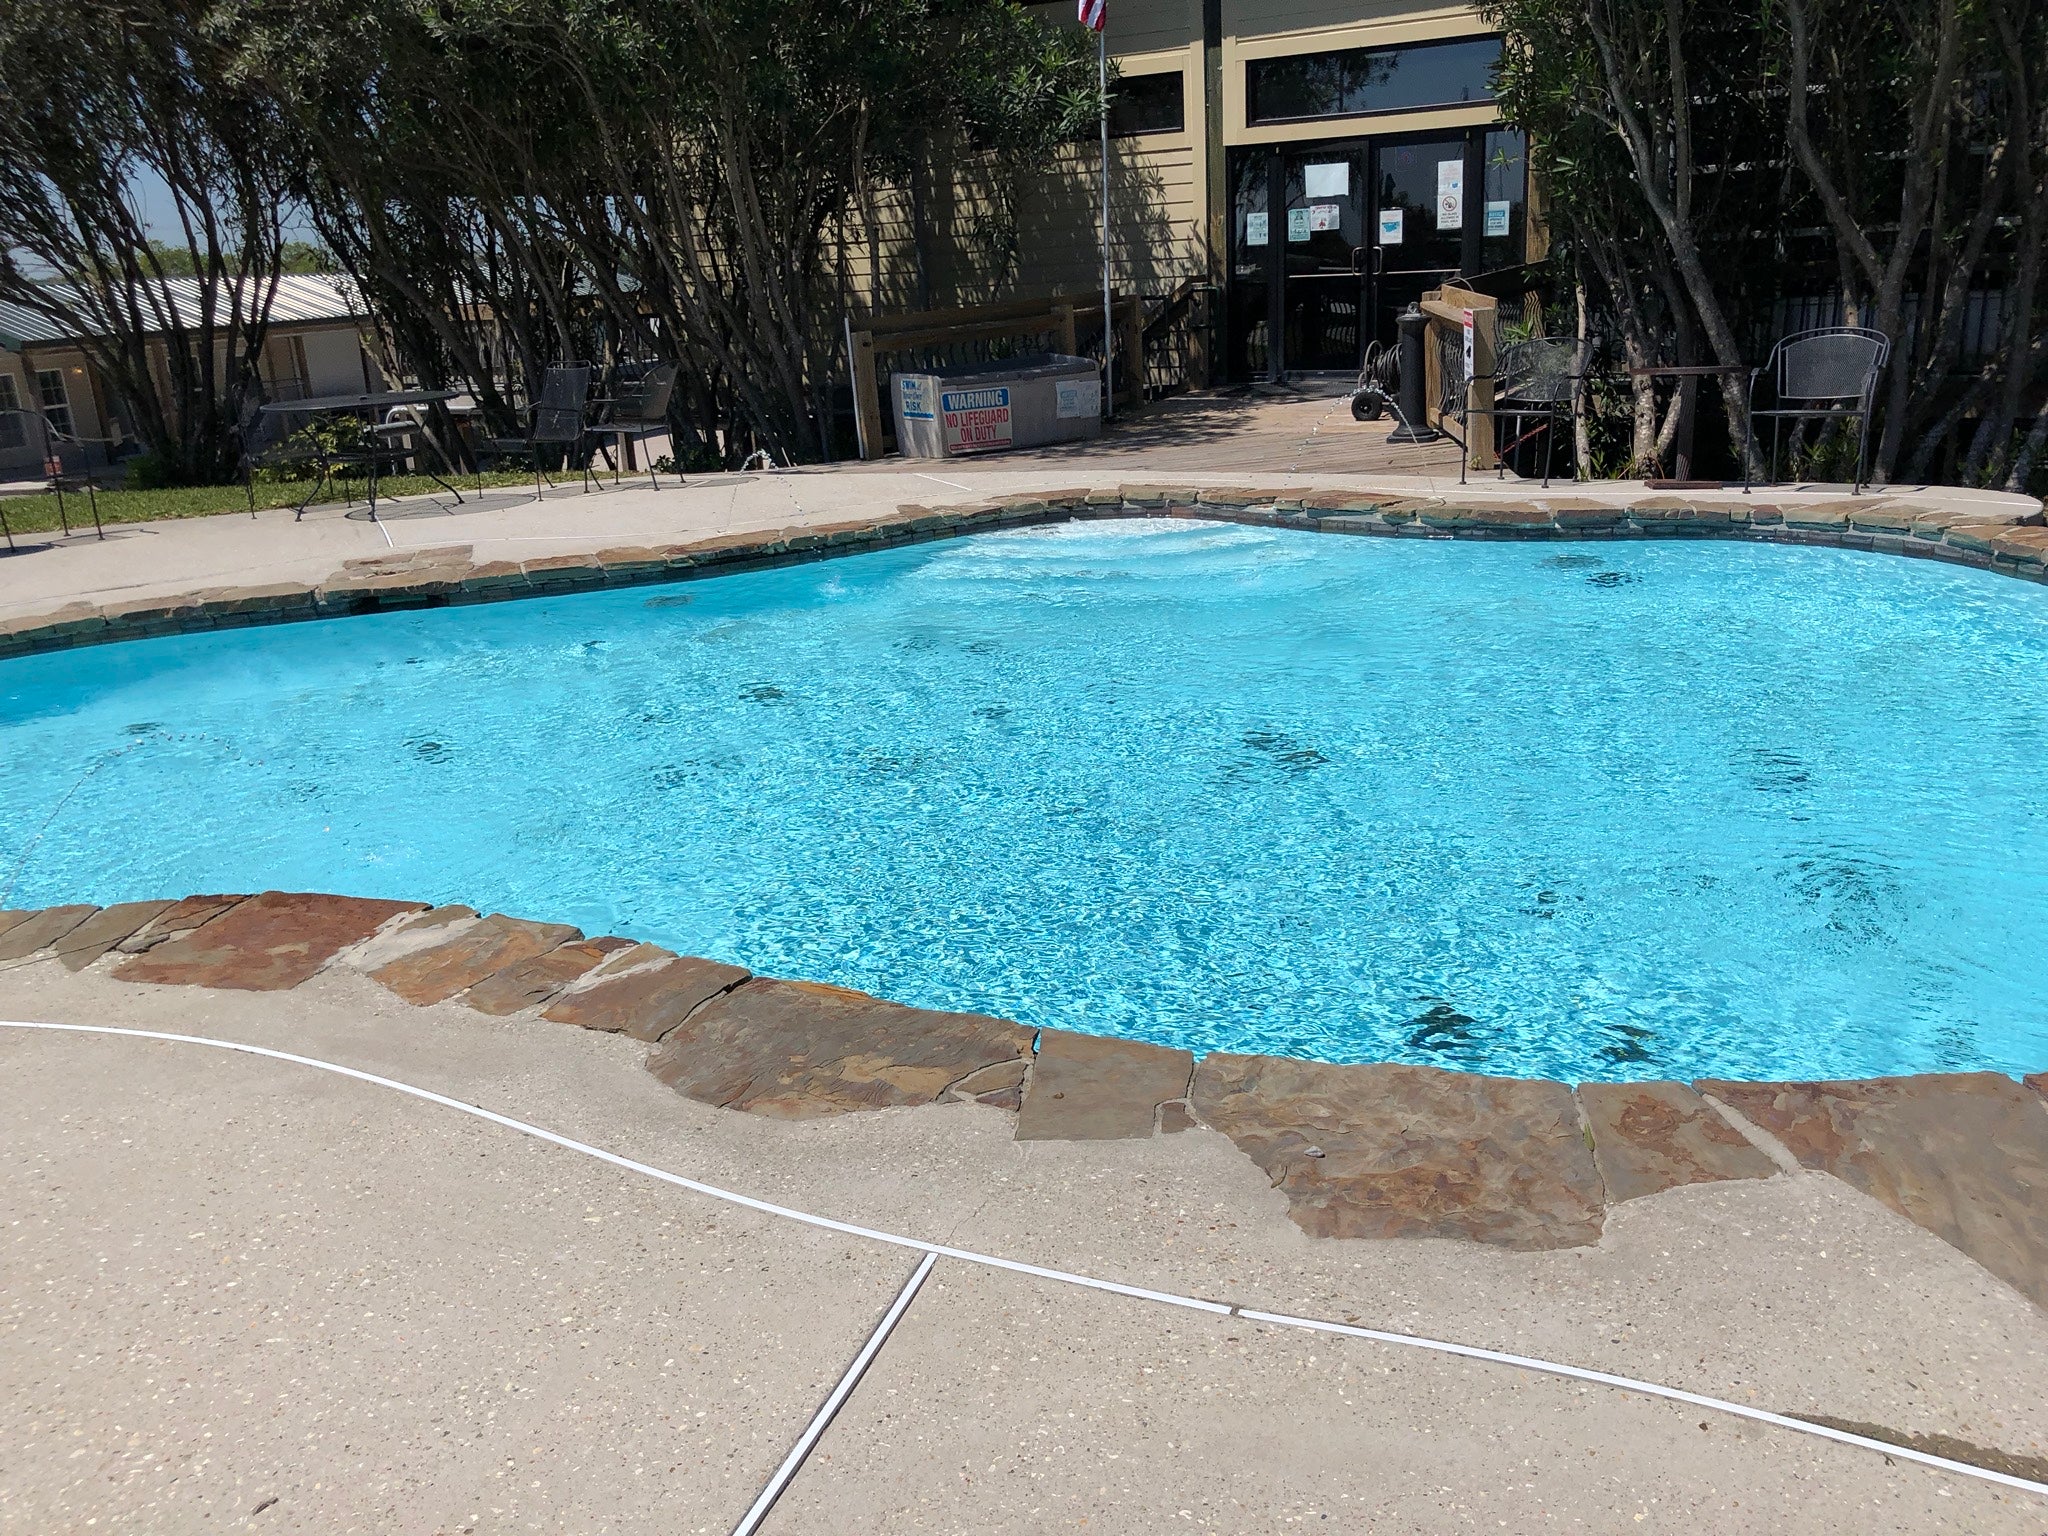 Pool at the resort